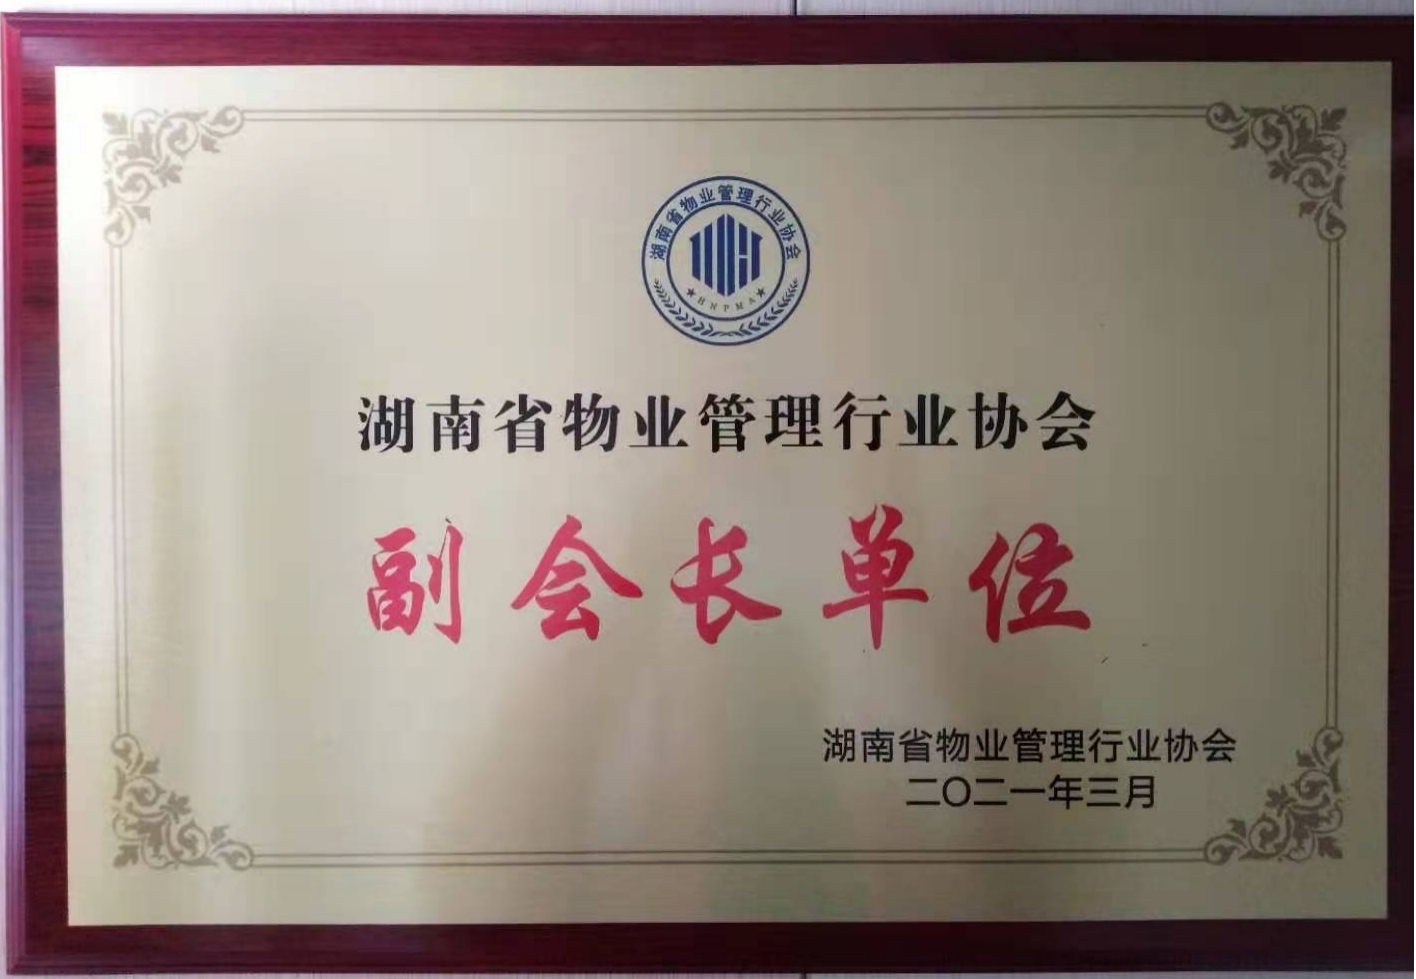 公司为湖南省物业行业协会“副会长单位”